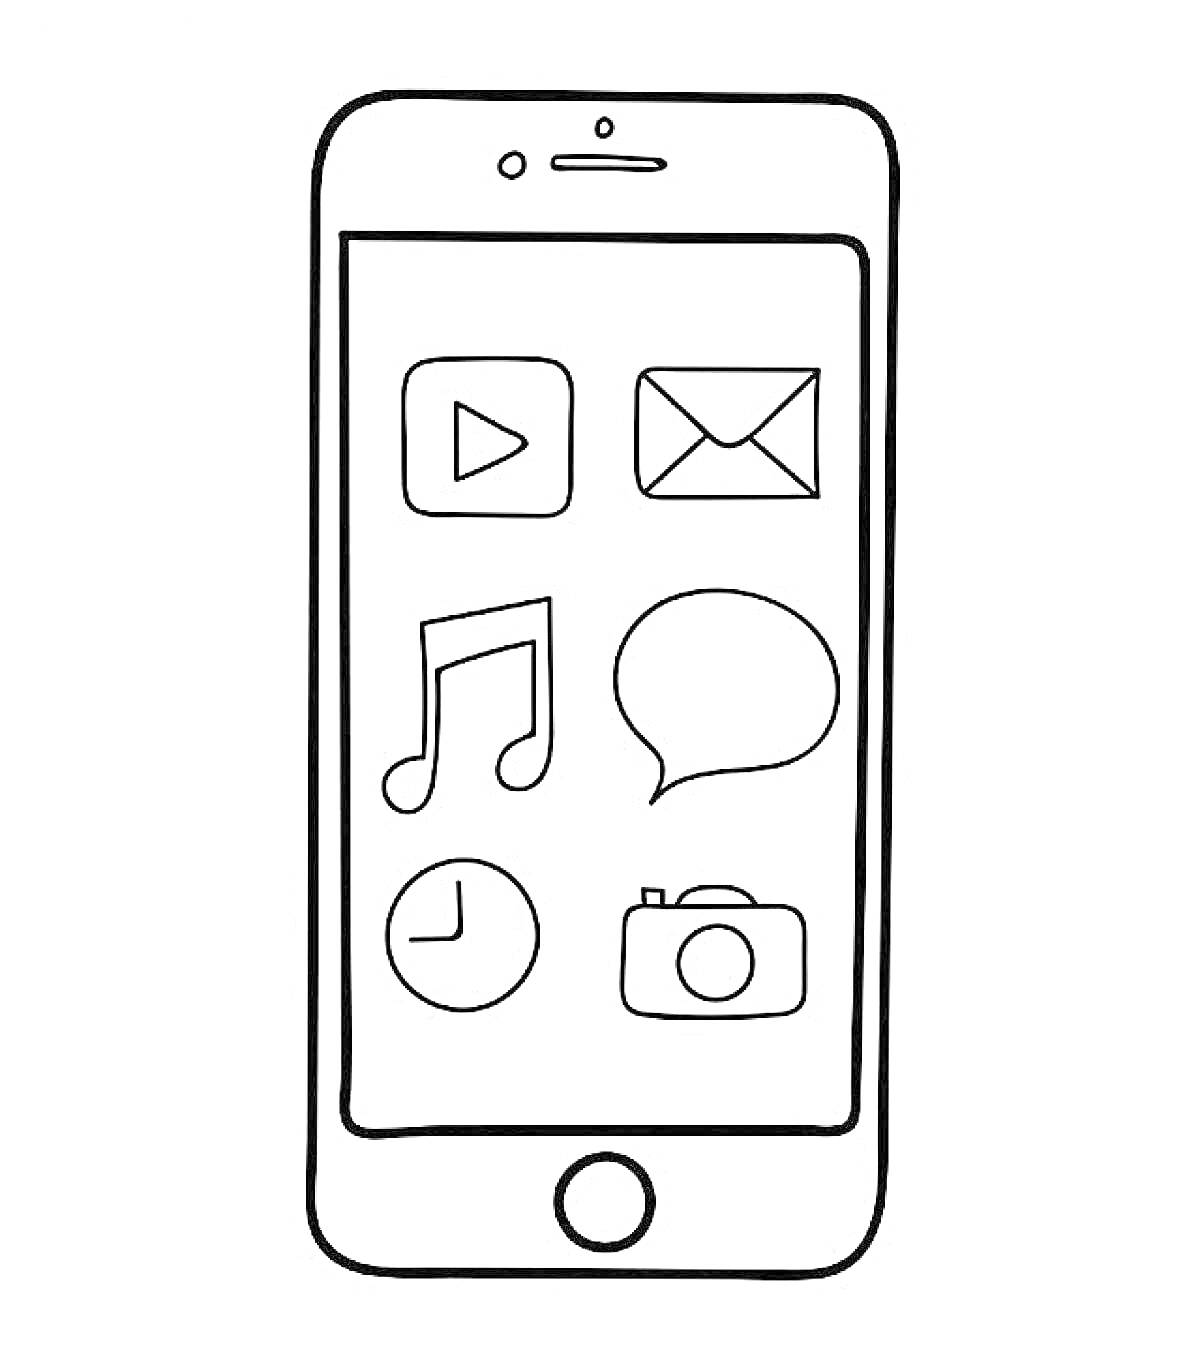 Раскраска Мобильный телефон с иконками приложения (плей, письмо, музыка, чат, часы, камера)